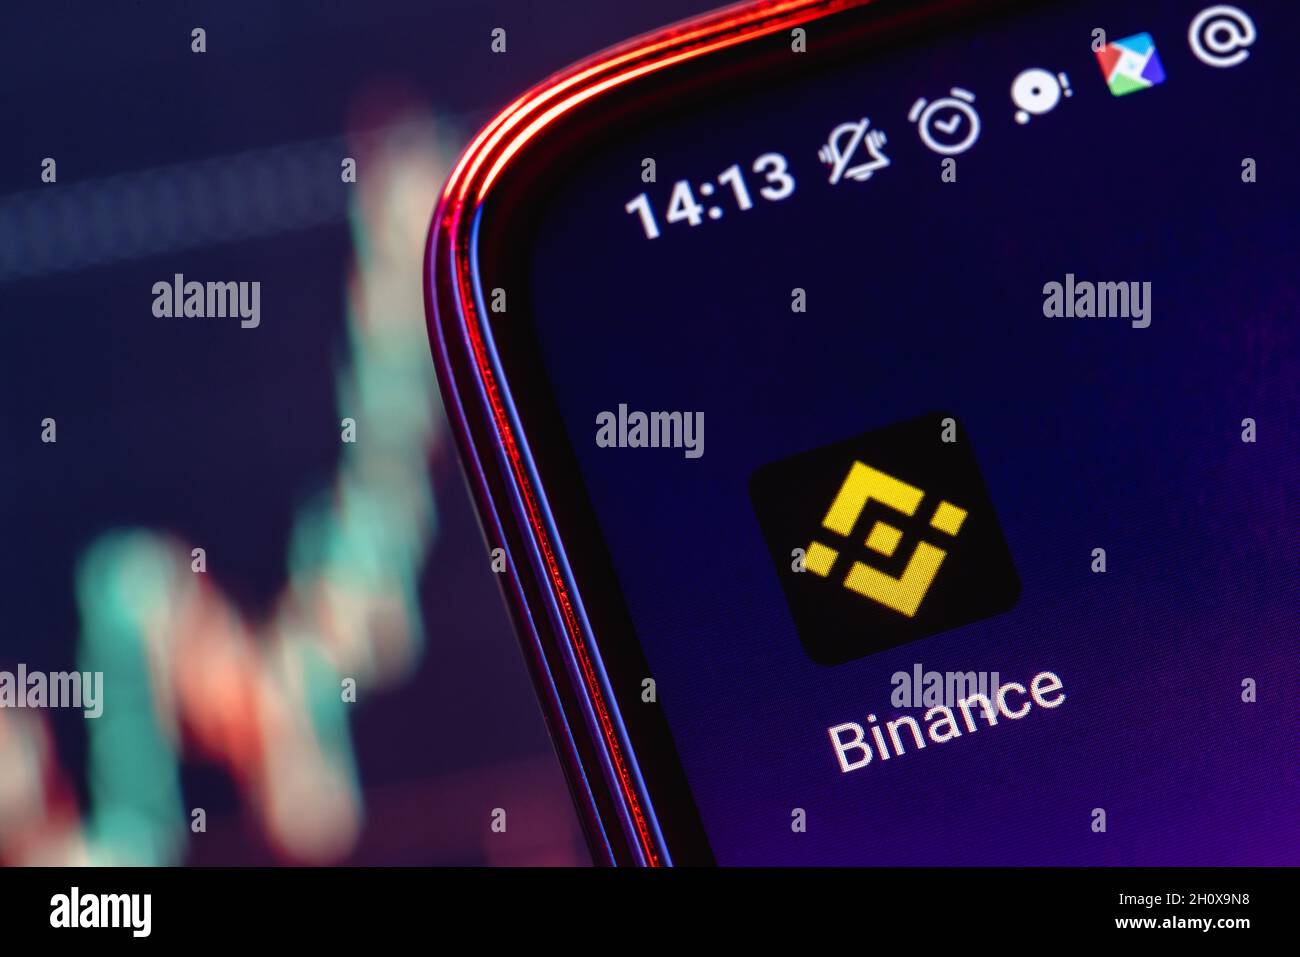 Binance ist eine Kryptowährungsbörse, die eine Plattform für den Handel mit verschiedenen Kryptowährungen bietet. Binance-App auf dem Smartphone-Bildschirm. Stockfoto